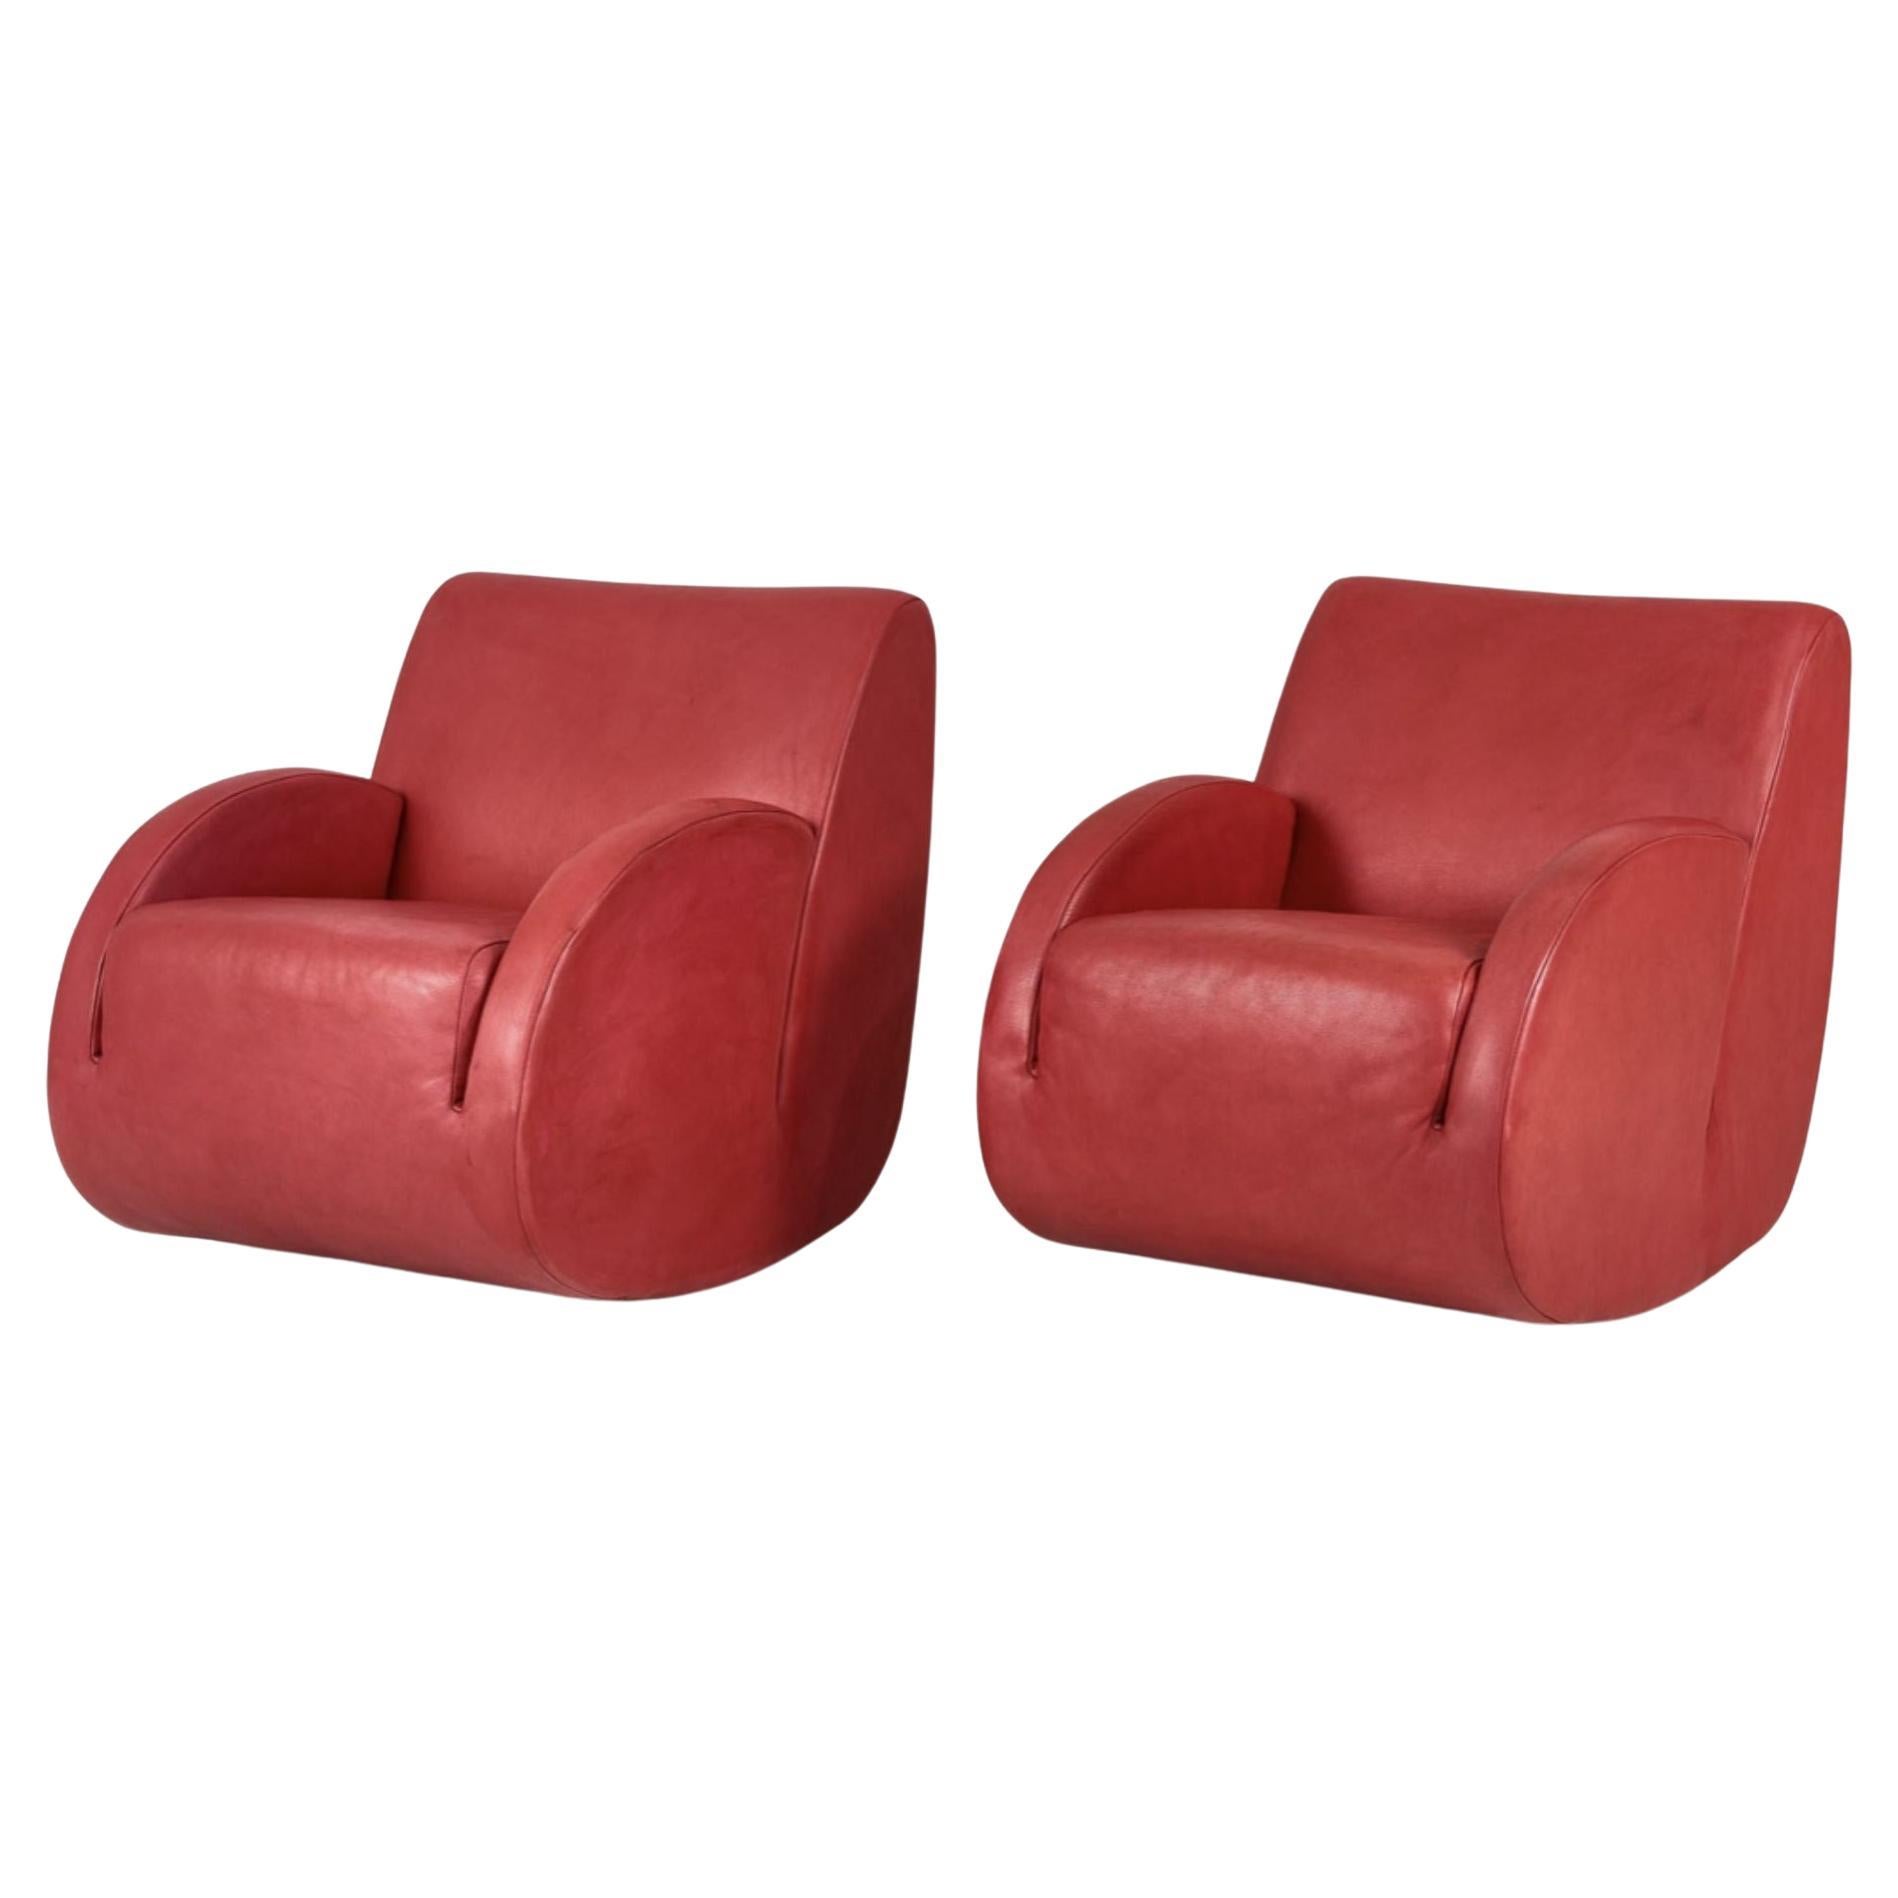 Pair Vladimir Kagan Leather Rocking Chairs